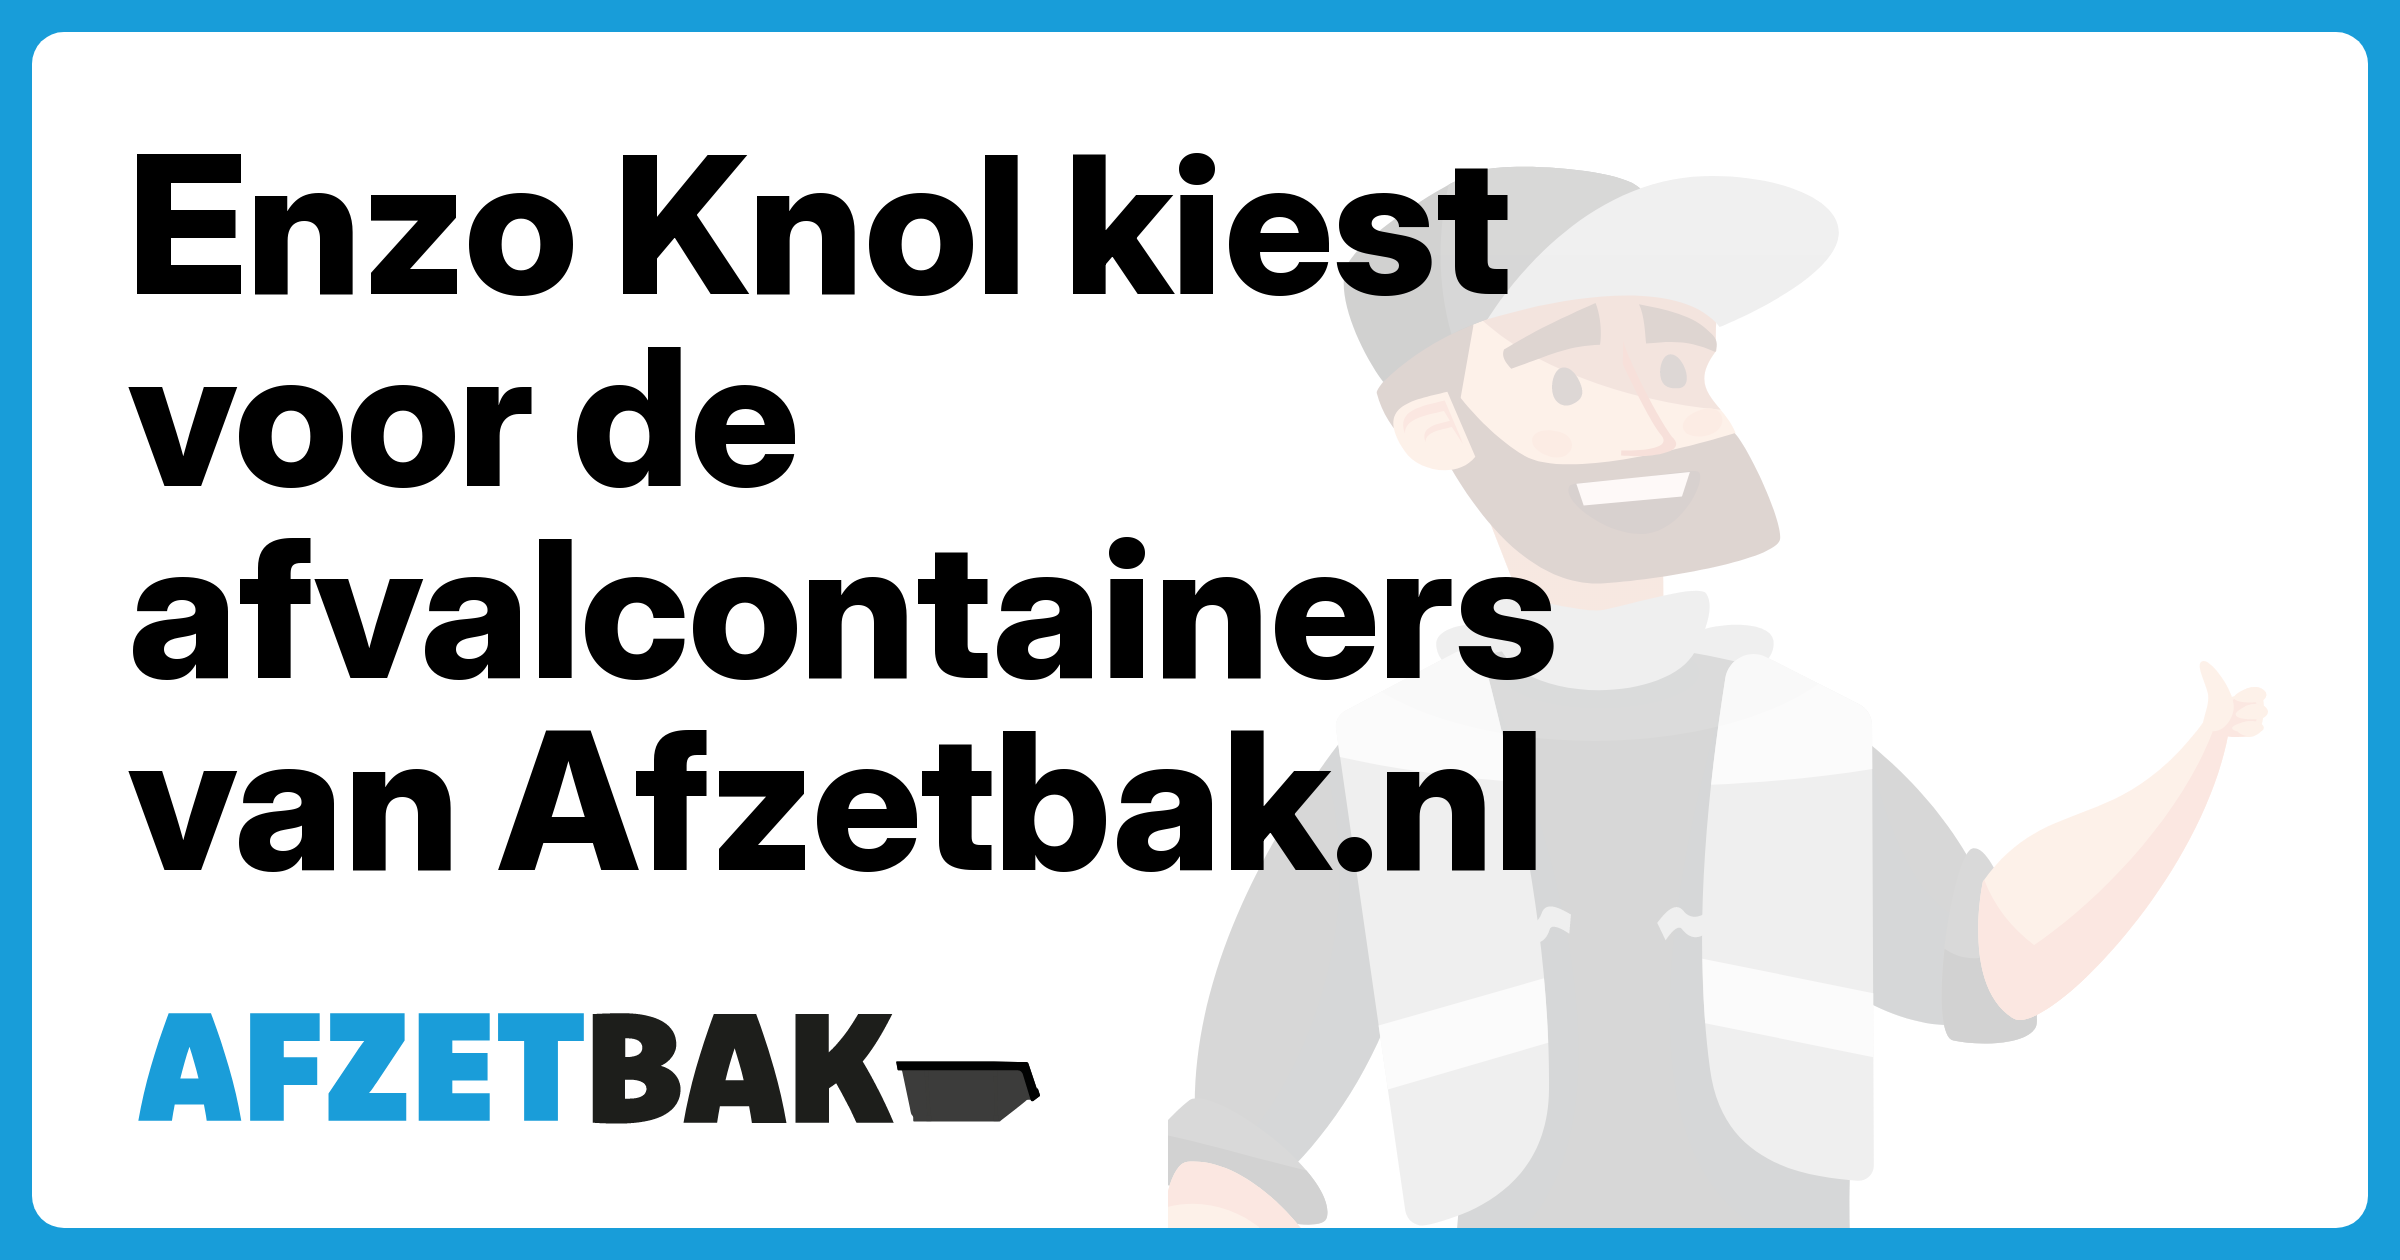 Enzo Knol kiest voor de afvalcontainers van Afzetbak.nl - Afzetbak.nl